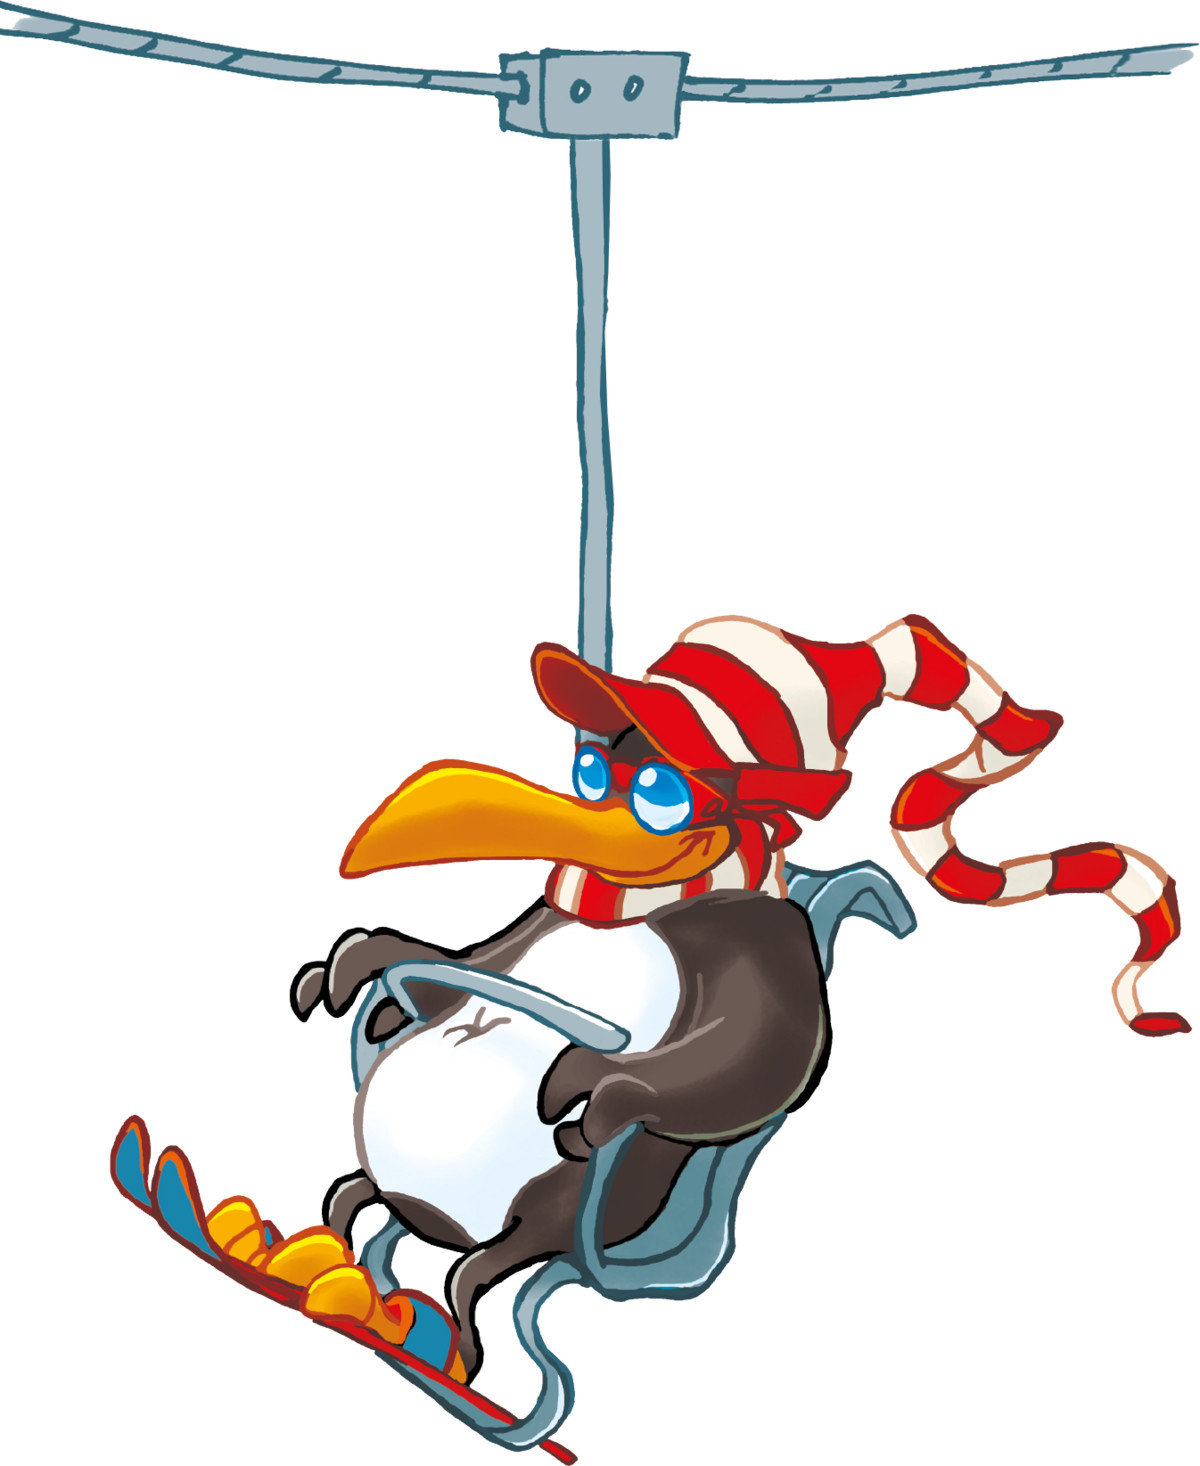 Illustration of BOBO the penguin on the chairlift